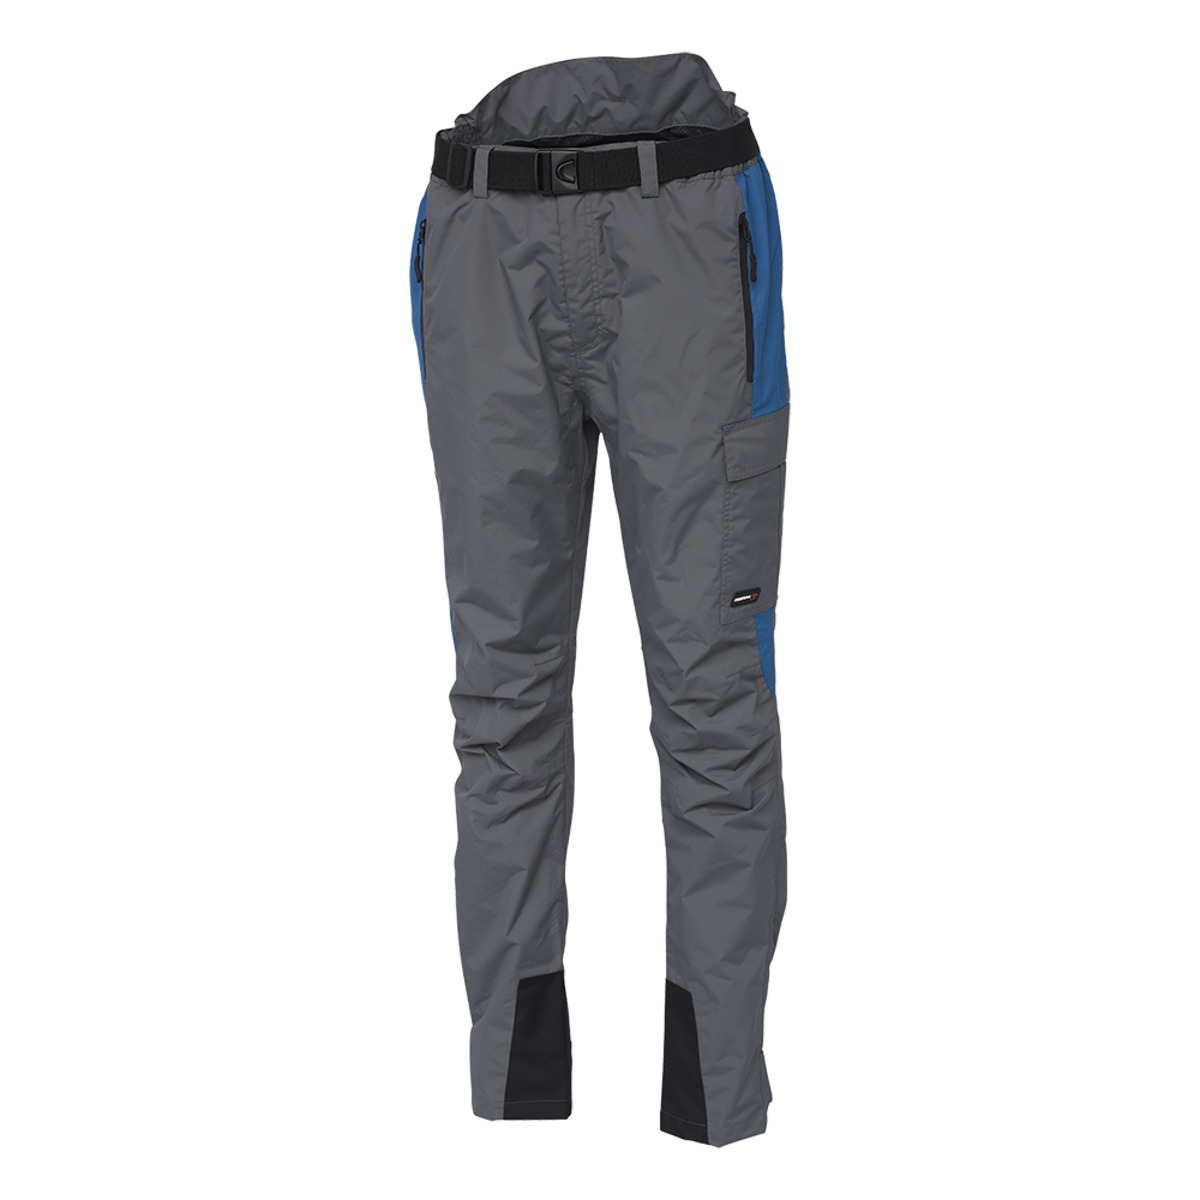 Scierra Helmsdale Fishing Trousers - XL SEAPORT BLUE